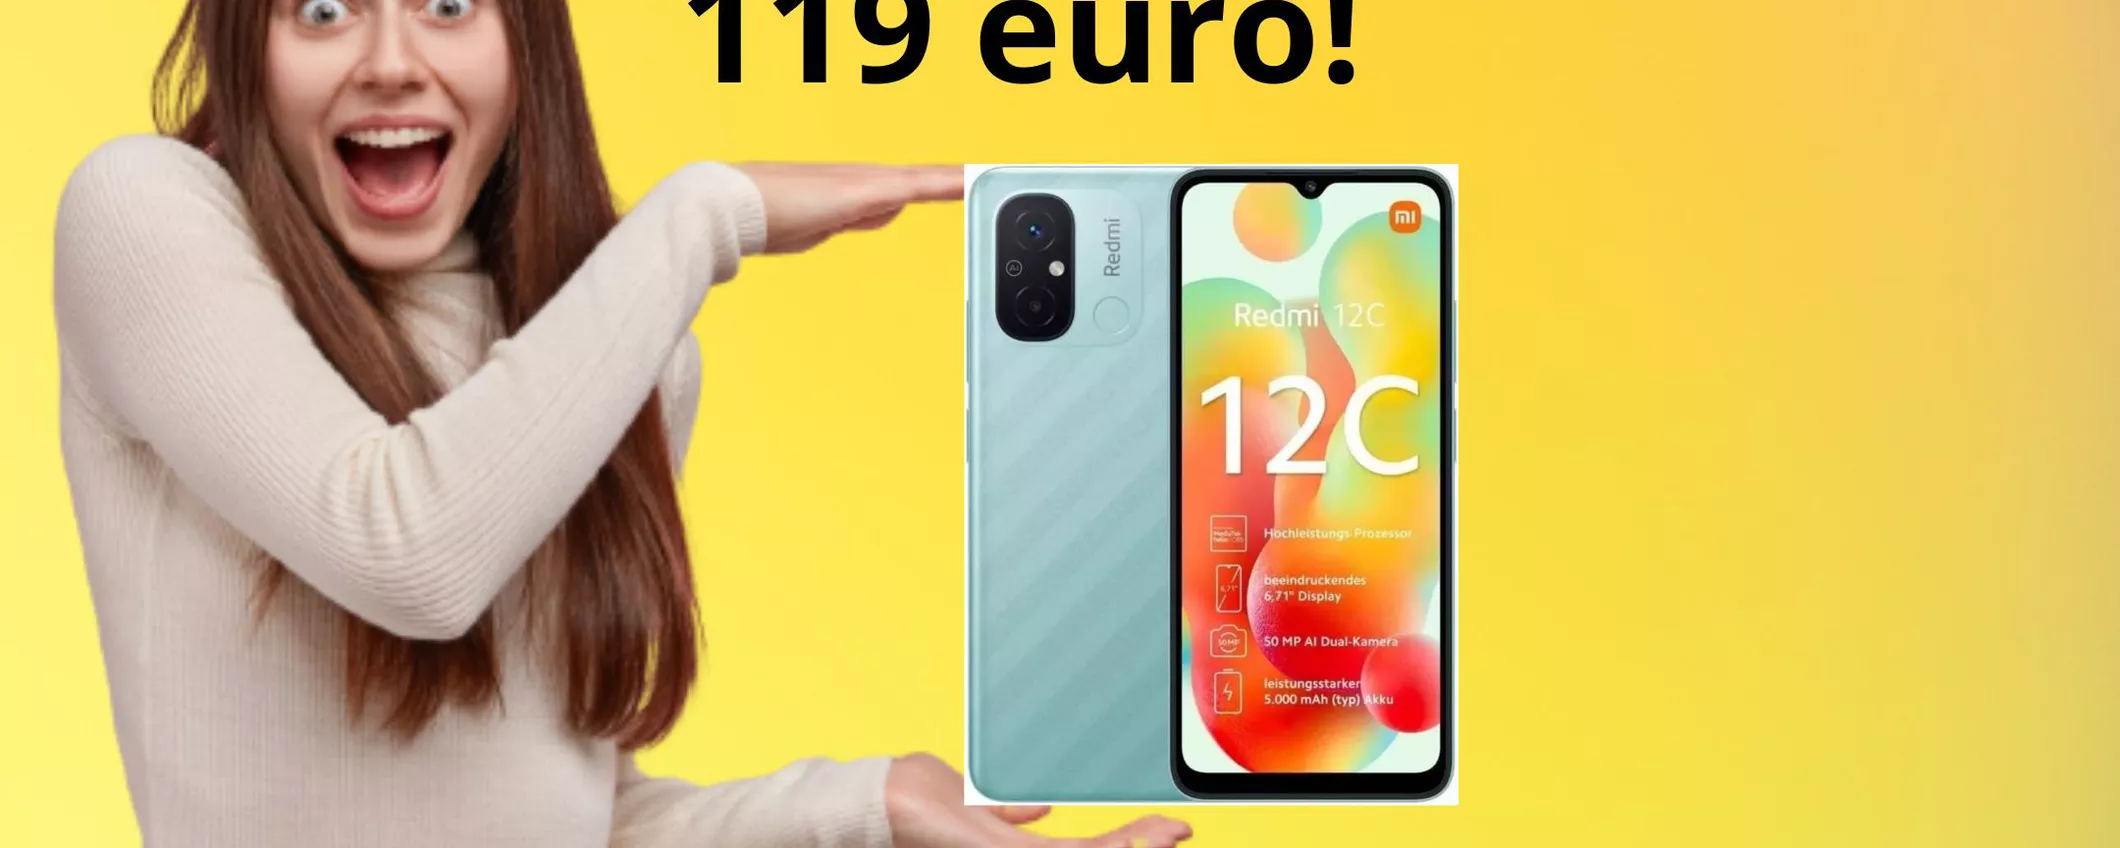 Xiaomi Redmi 12C a soli 119 euro: l'OFFERTA che non puoi rifiutare